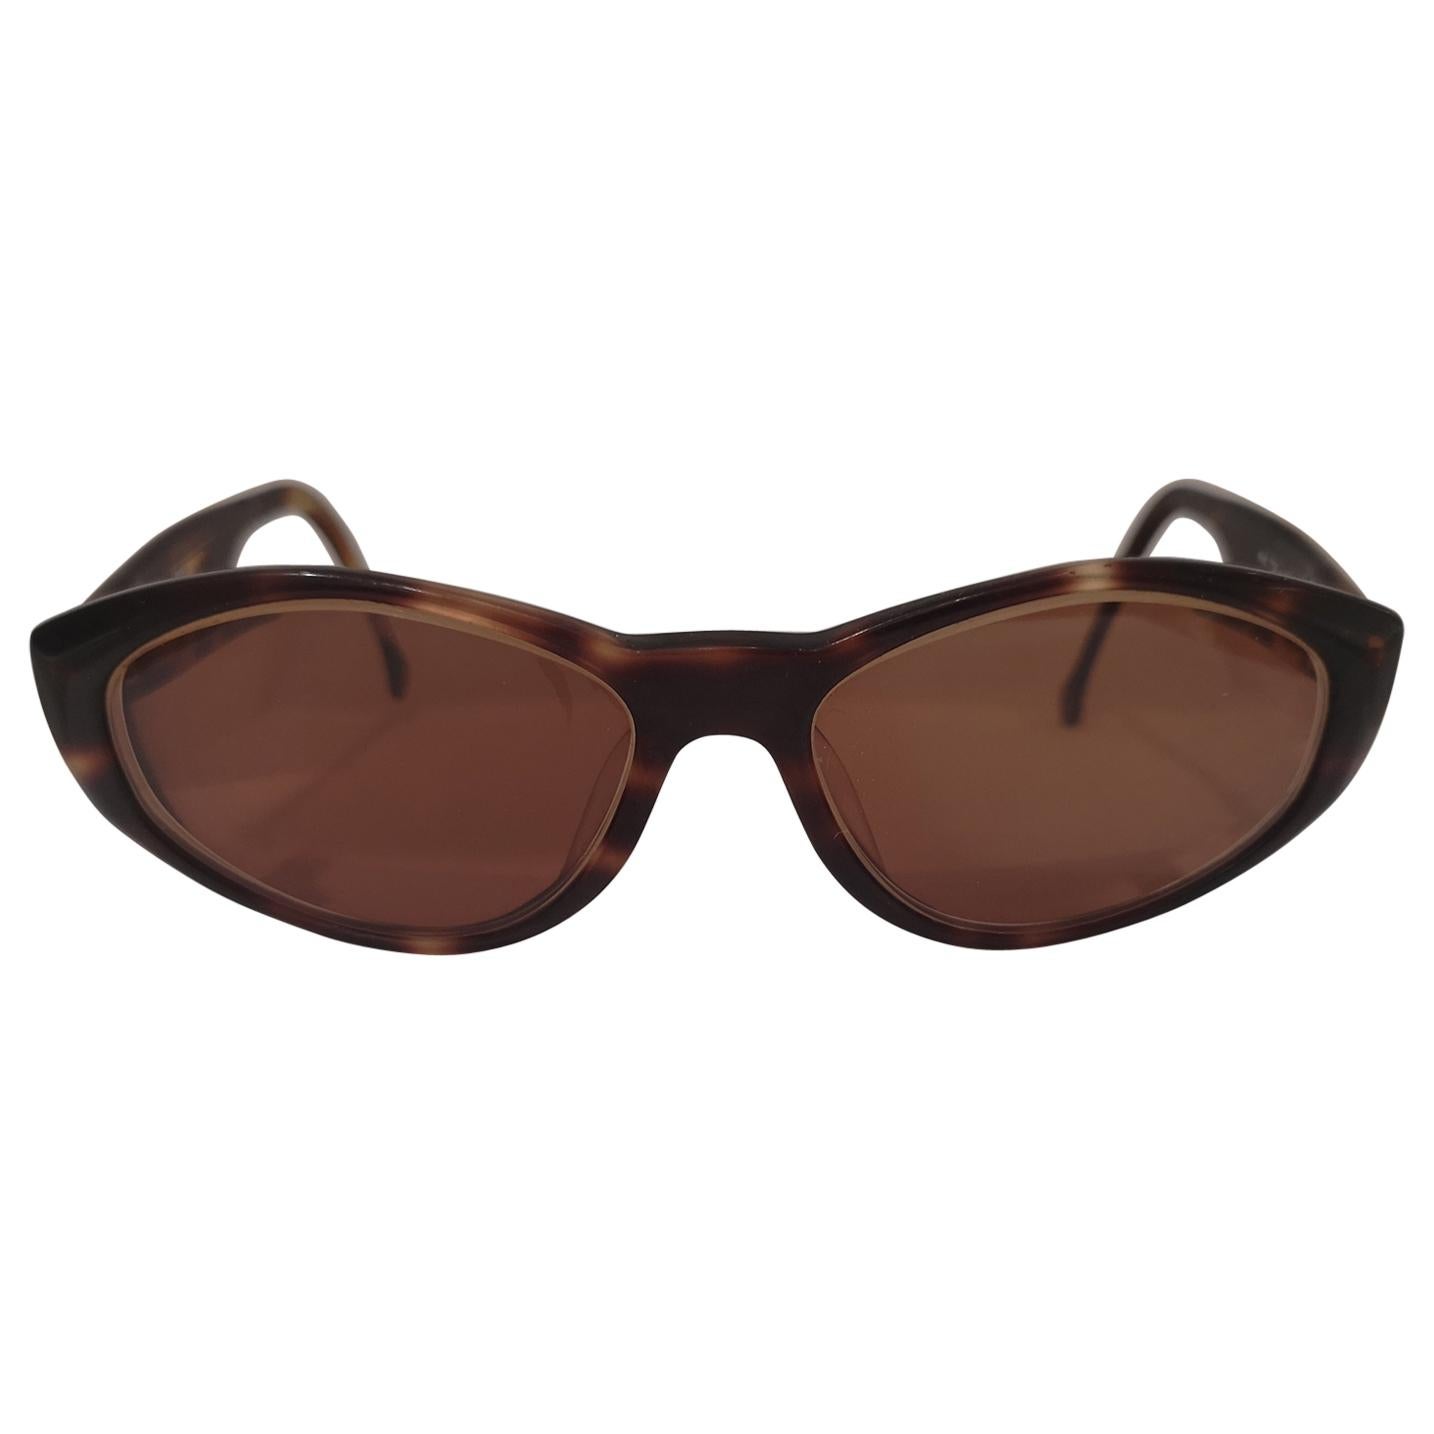 Enrico Coveri brown sunglasses